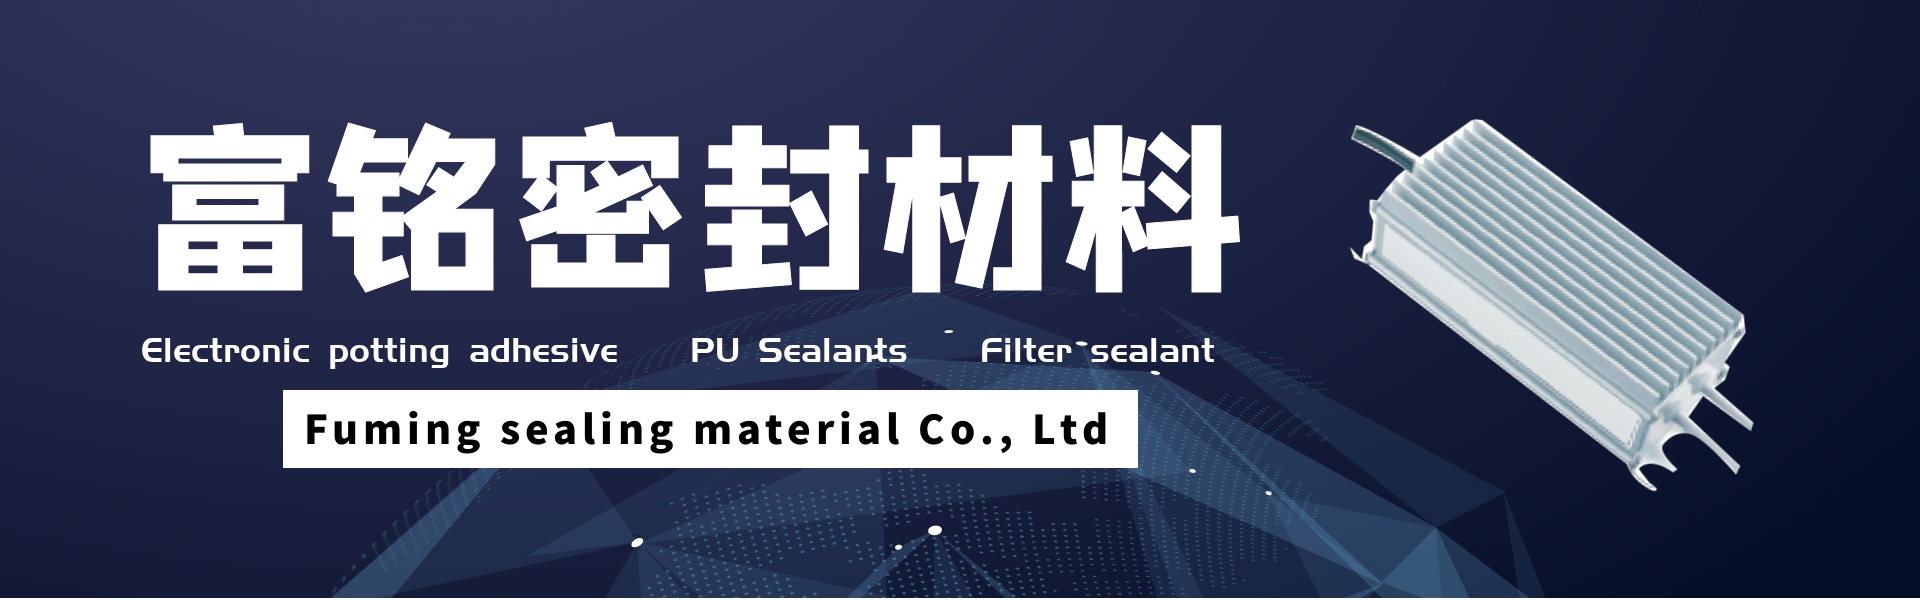 กาวสำหรับการปลูกแบบอิเล็กทรอนิกส์, สารเคลือบหลุมร่องฟัน PU, น้ำยาซีลตัวกรอง,Dongguan fuming sealing material Co., Ltd